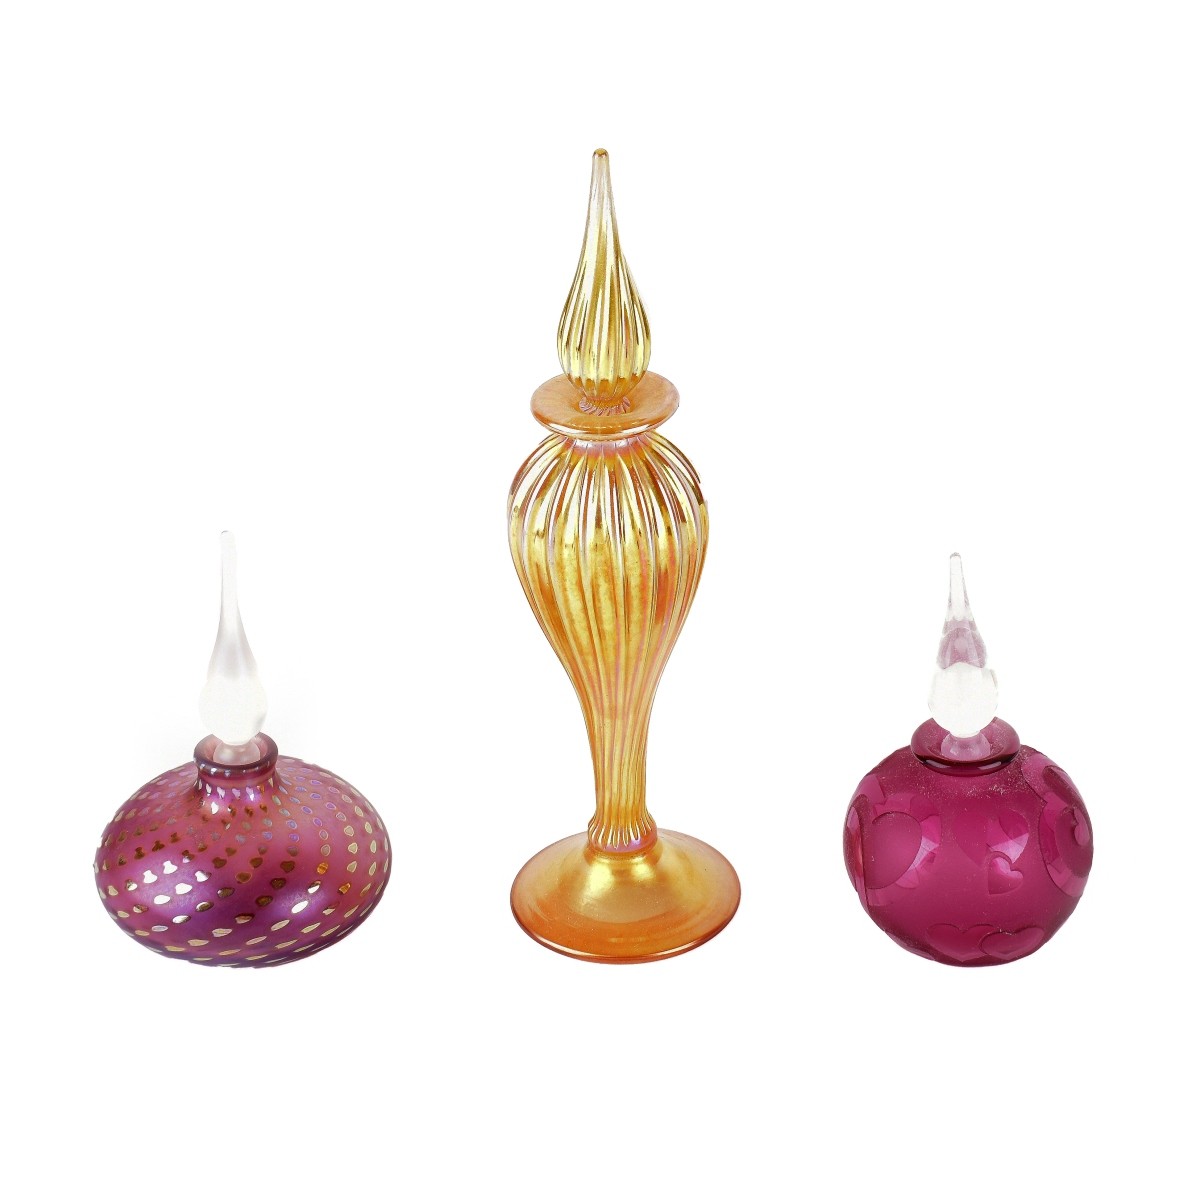 Correia Art Glass Perfume Bottles